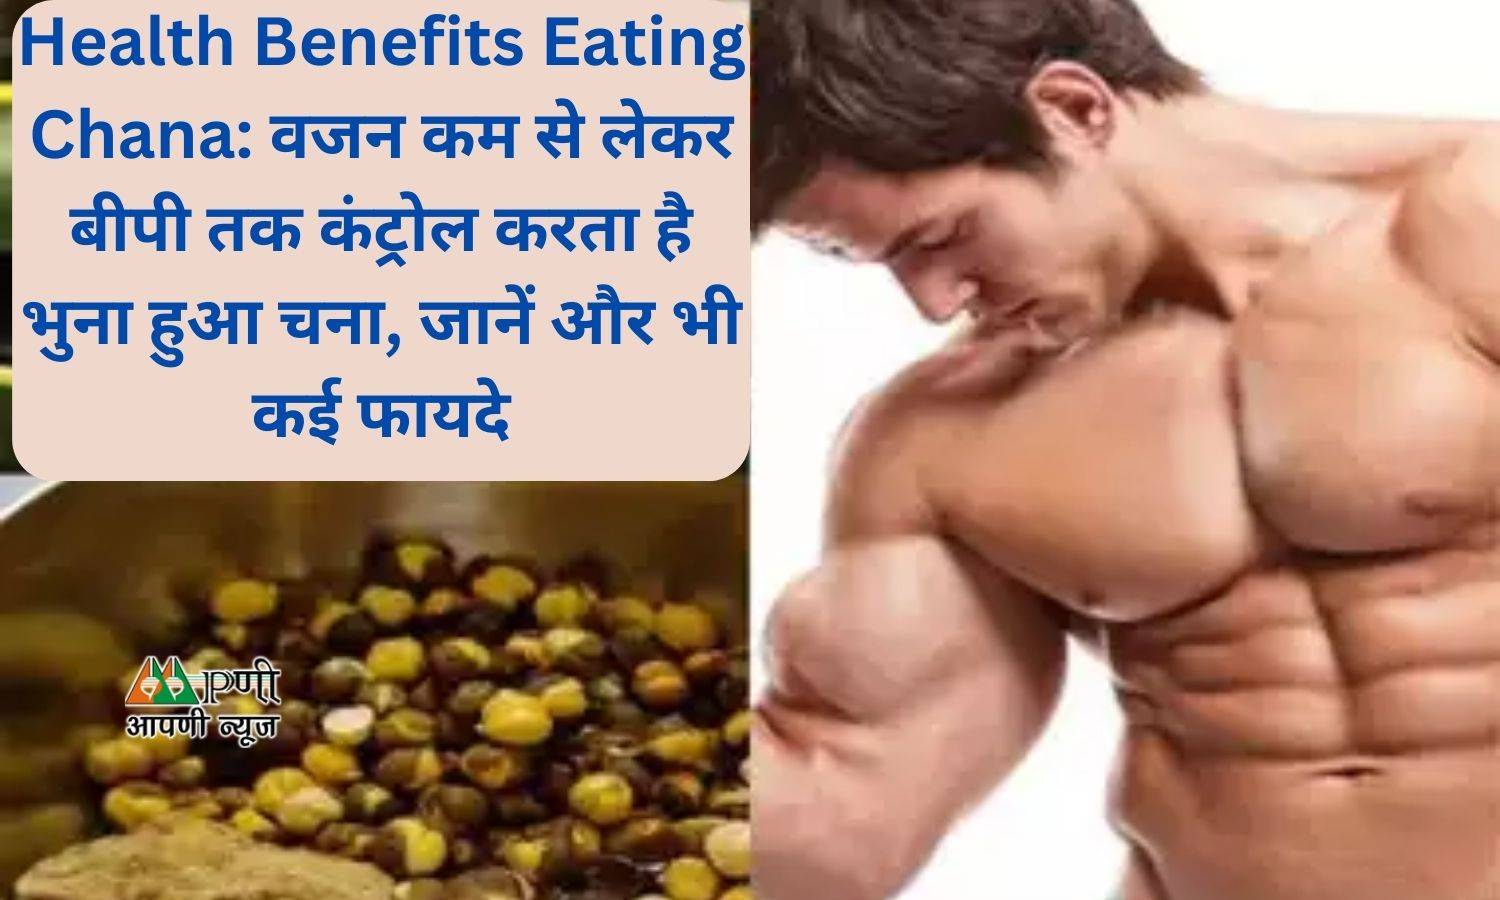 Health Benefits Eating Chana: वजन कम से लेकर बीपी तक कंट्रोल करता है भुना हुआ चना, जानें और भी कई फायदे